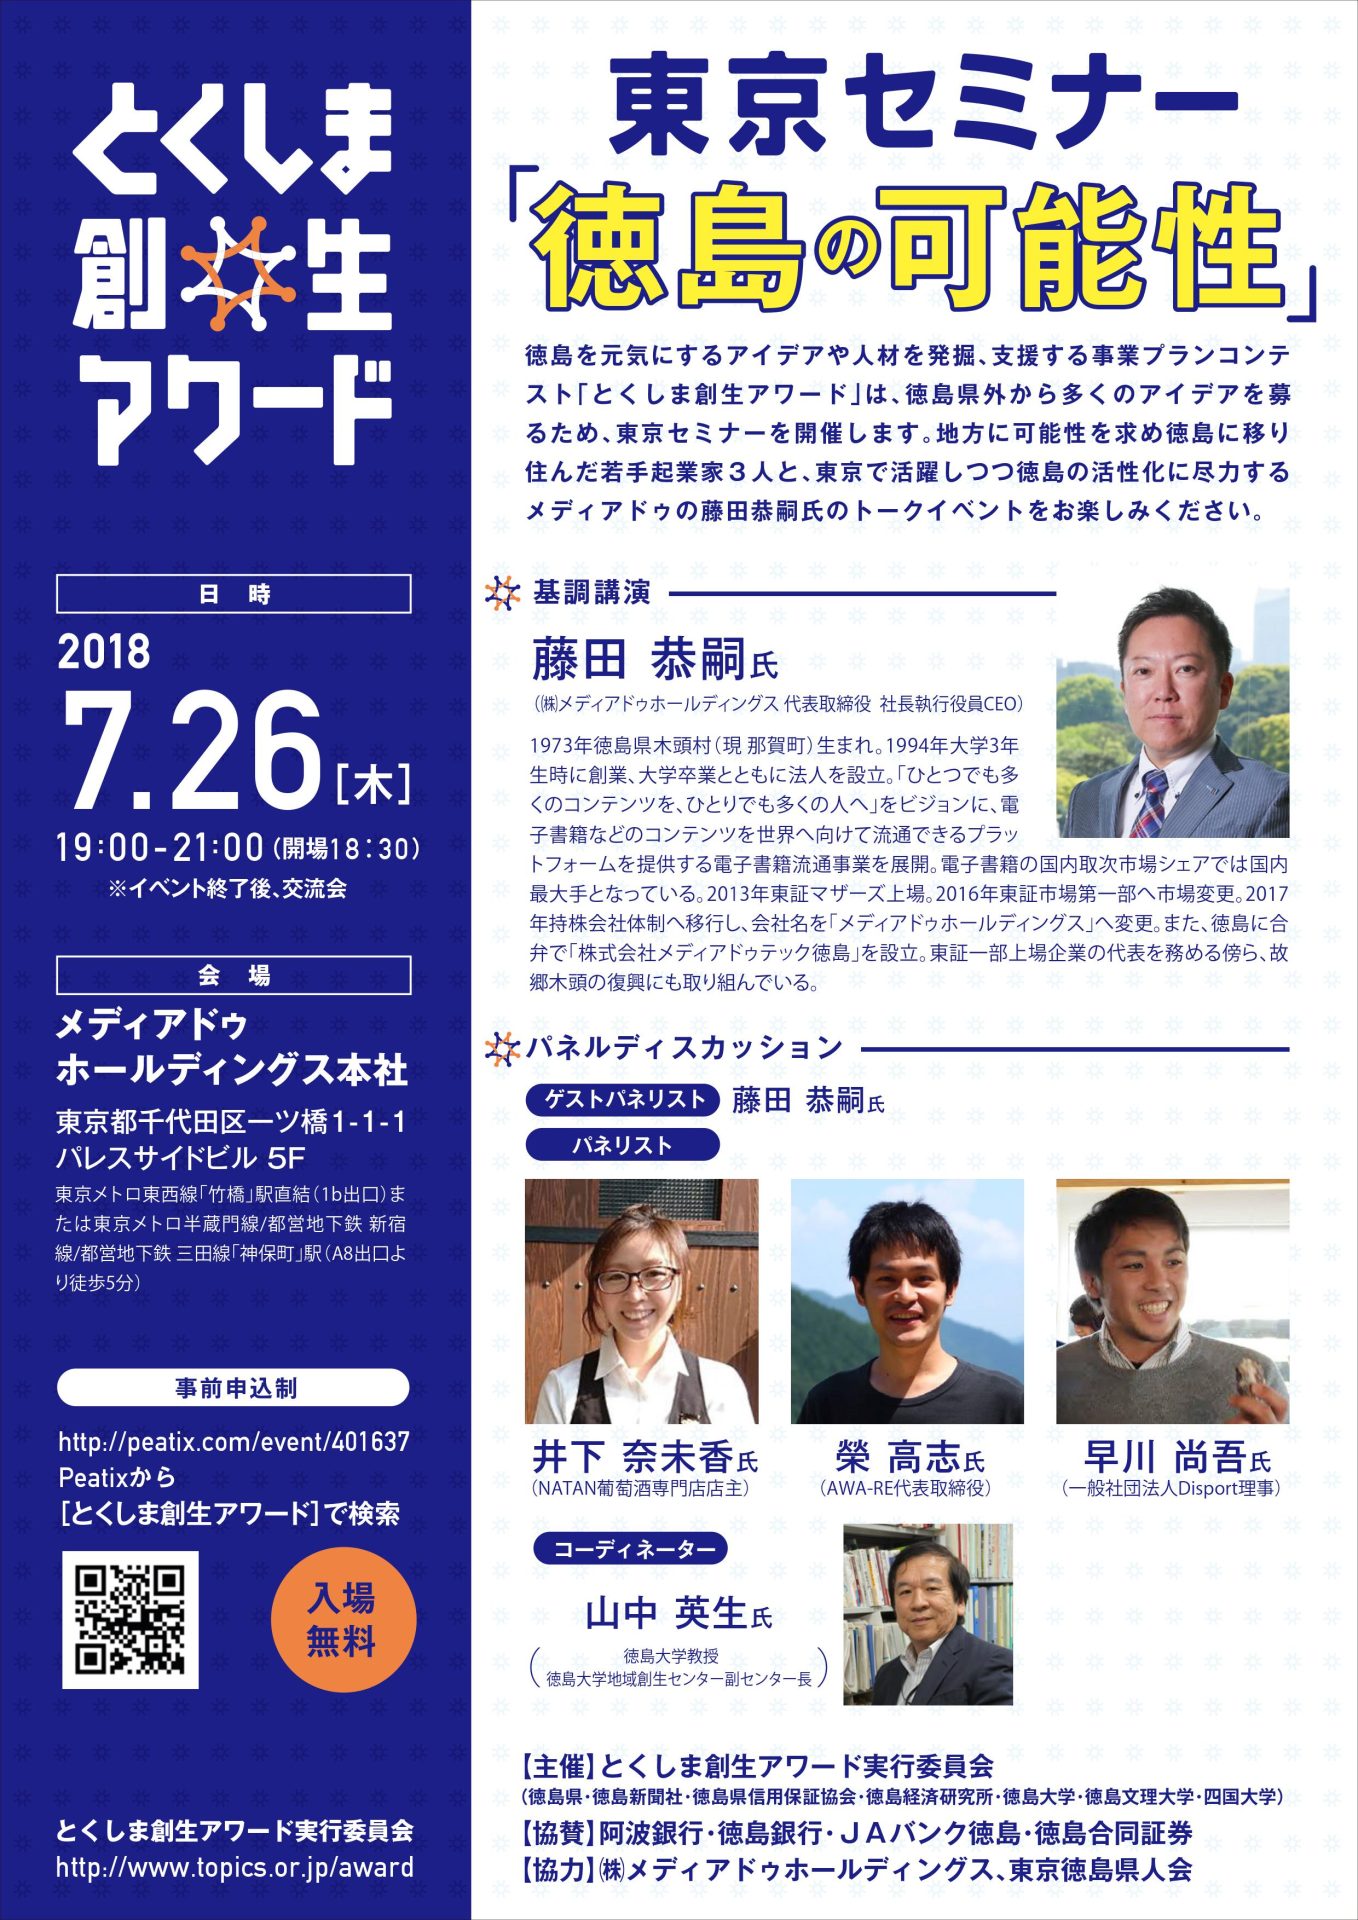 とくしま創生アワード 東京セミナー『徳島の可能性』 | 移住関連イベント情報